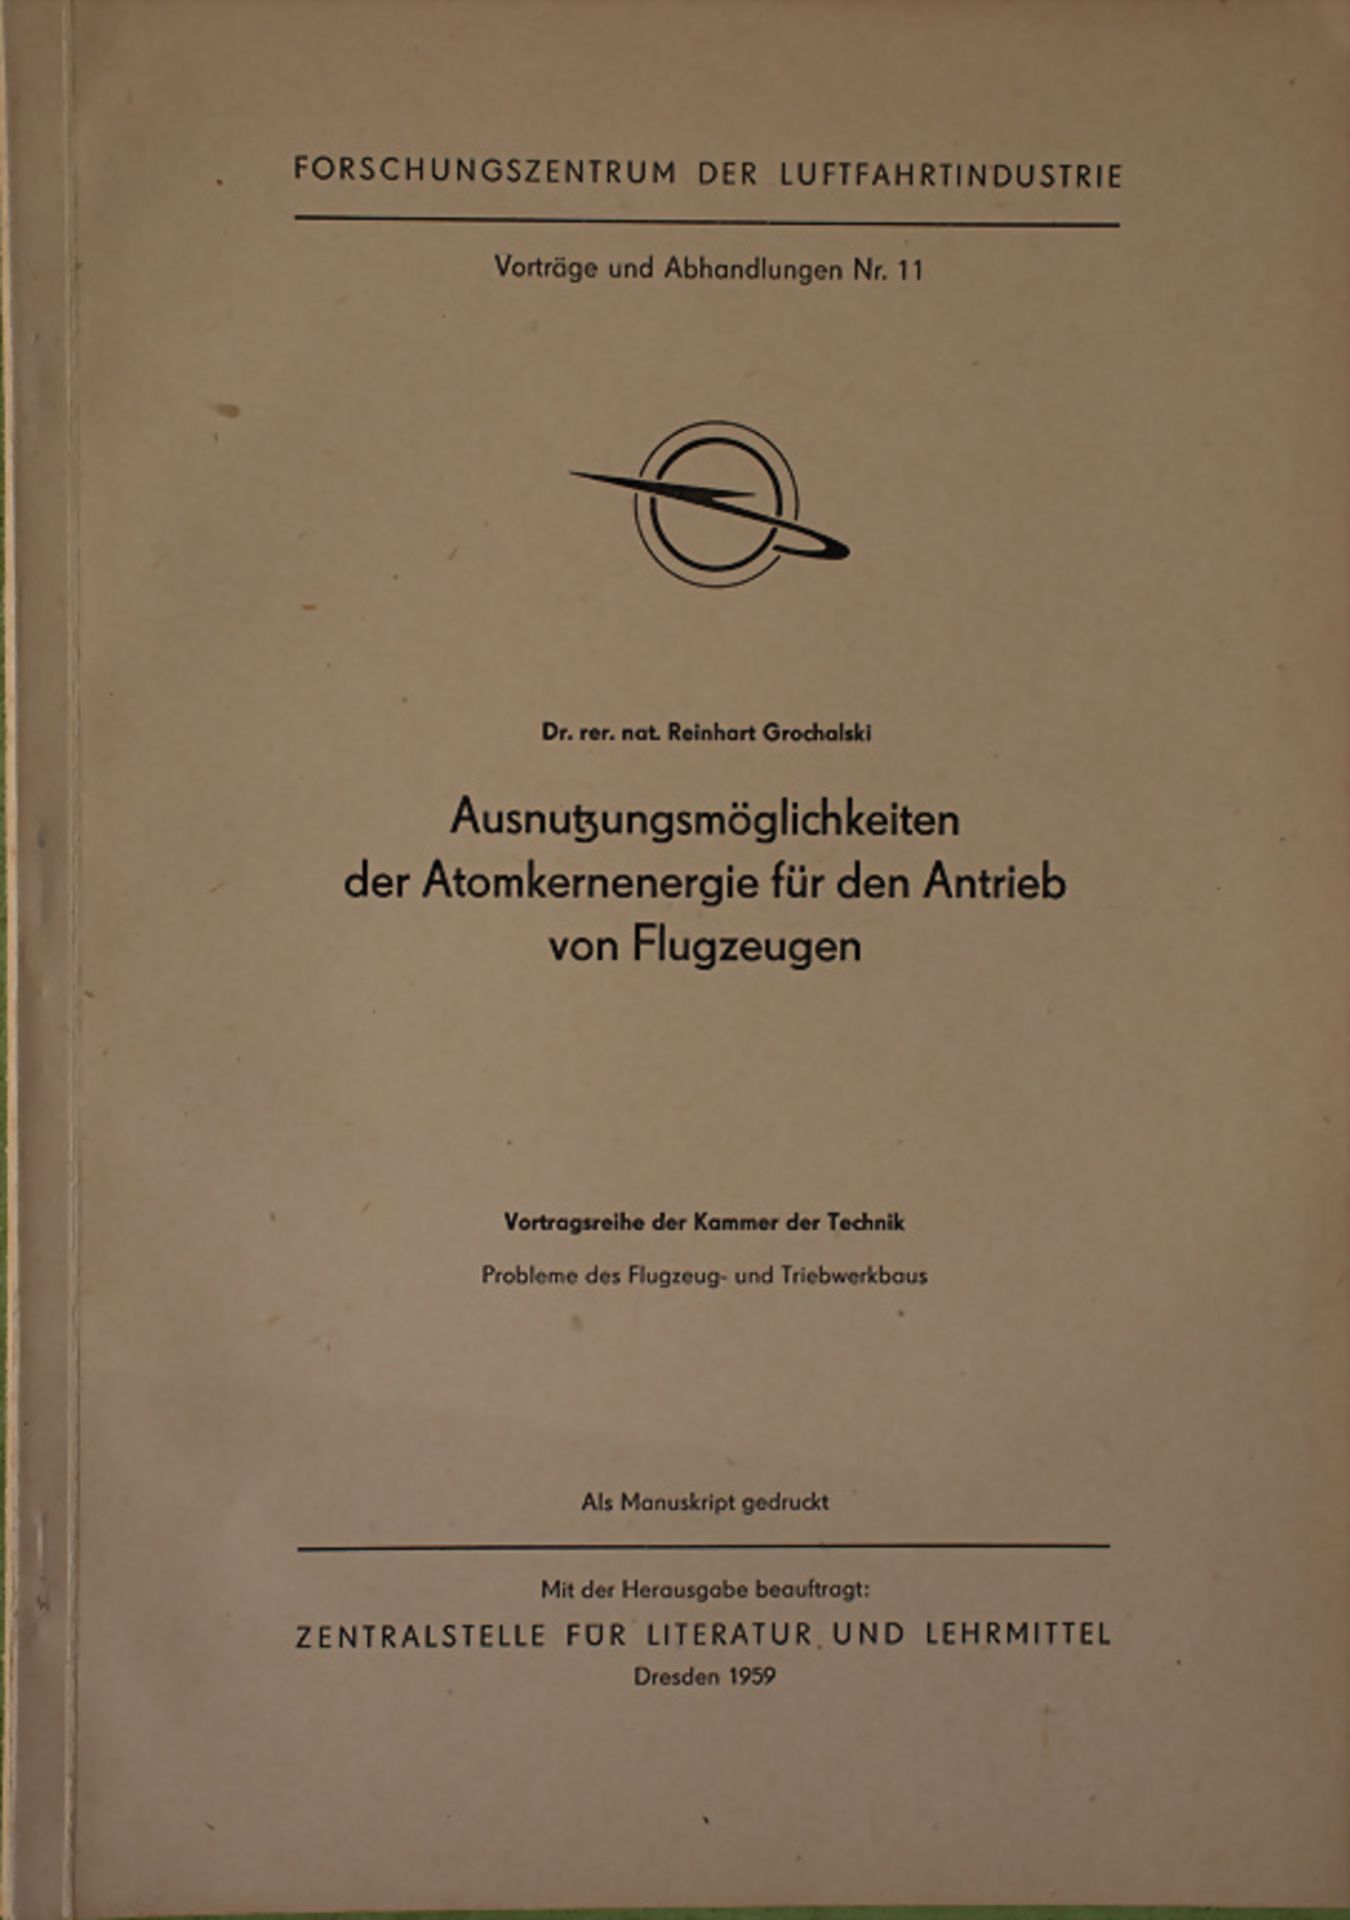 Manuskript 'Atomenergie für den Antrieb von Flugzeugen', Dresden, 1959